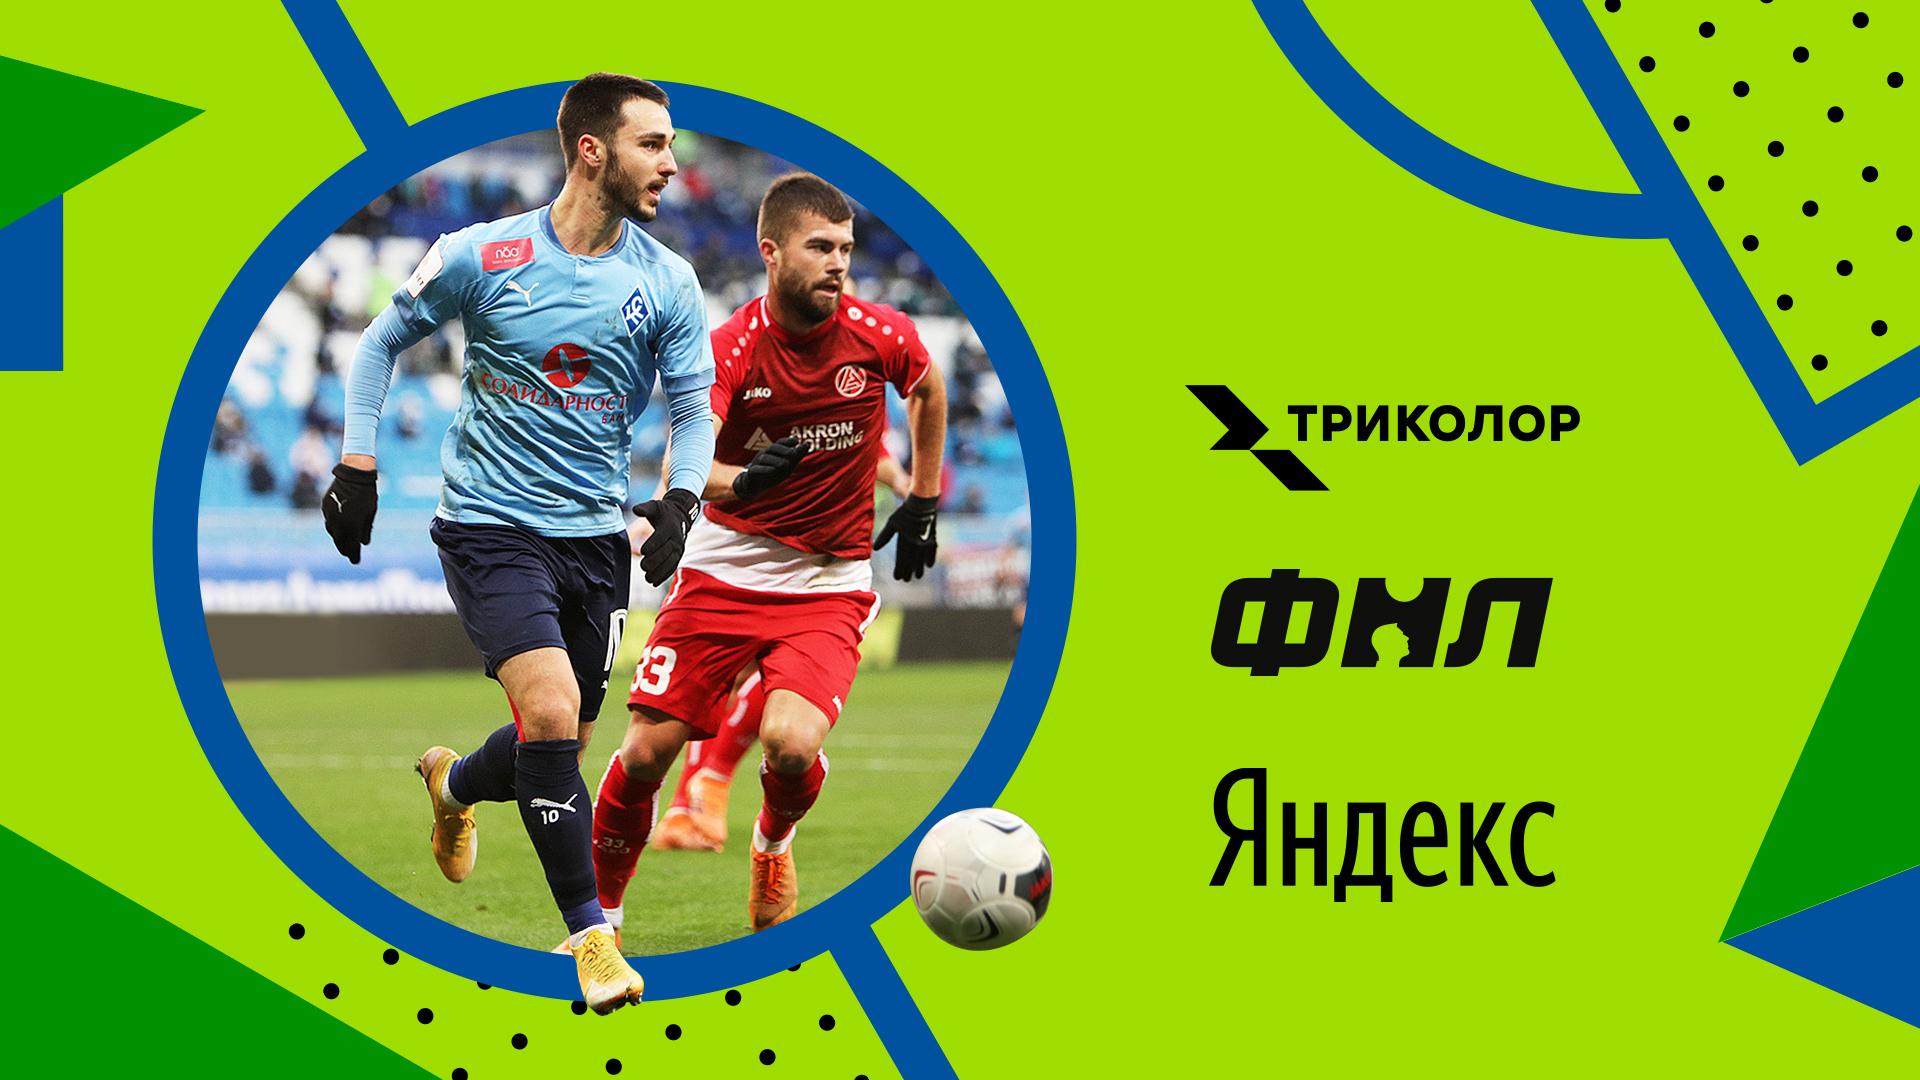 Триколор и Яндекс договорились о трансляциях матчей ФНЛ 1